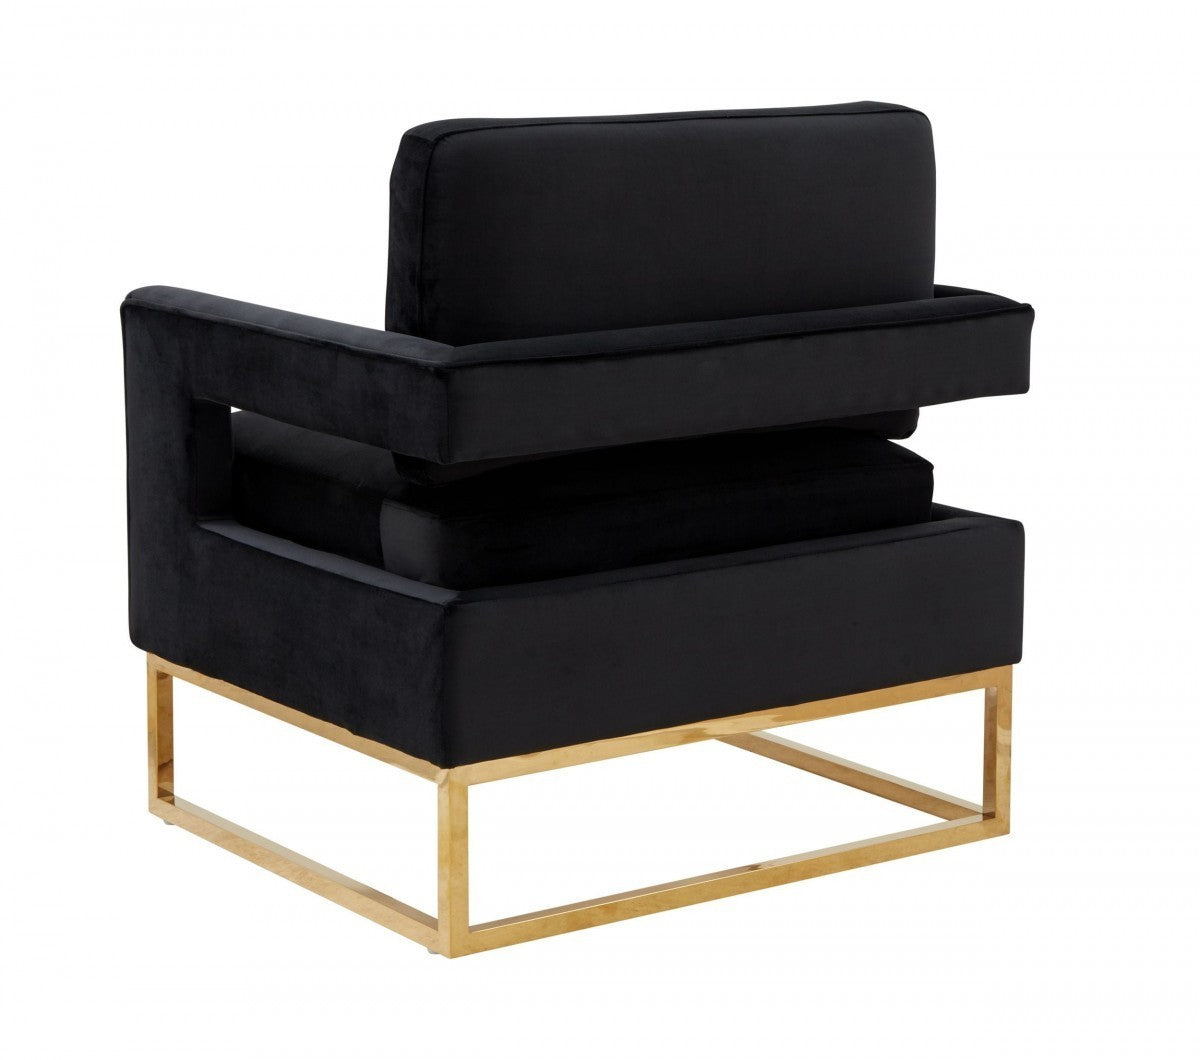 Modrest Edna Modern Black Velvet & Gold Accent Chair - Home Elegance USA